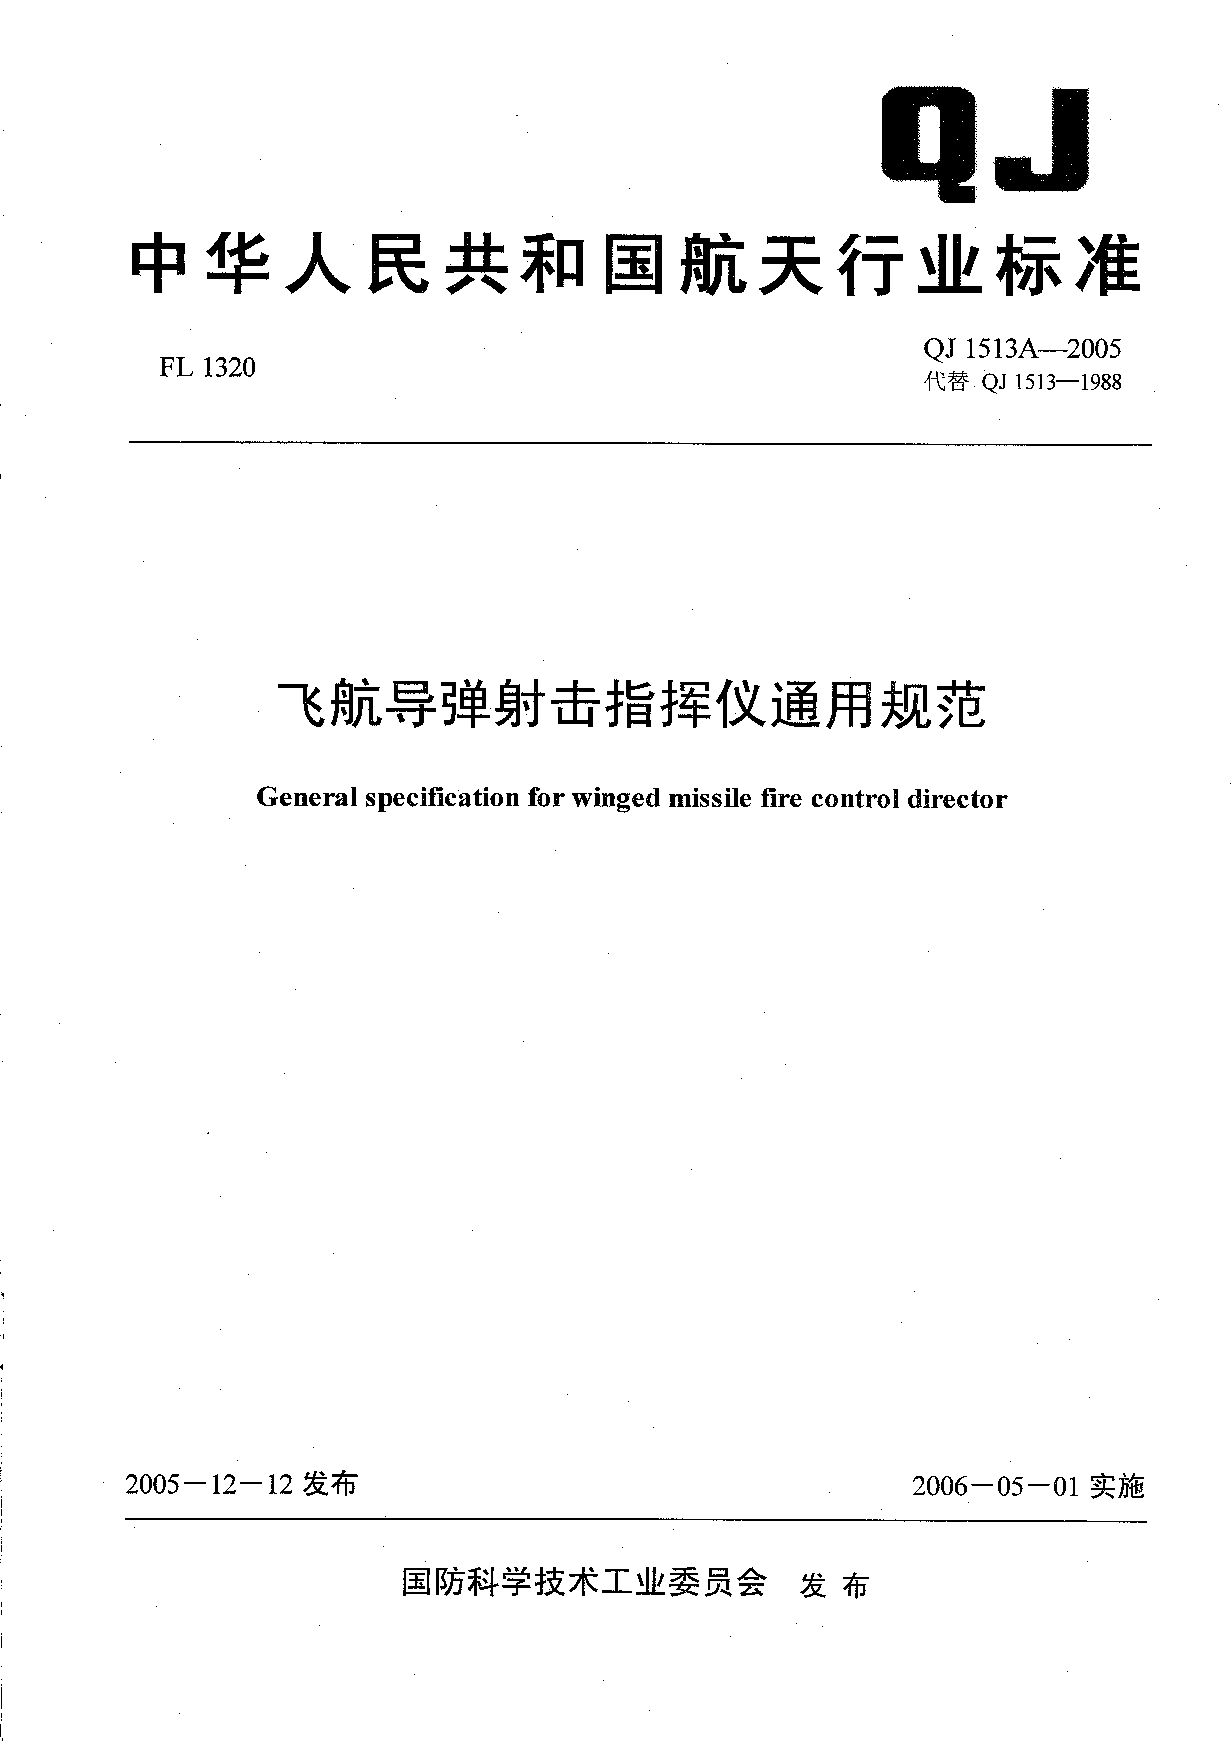 QJ 1513A-2005封面图